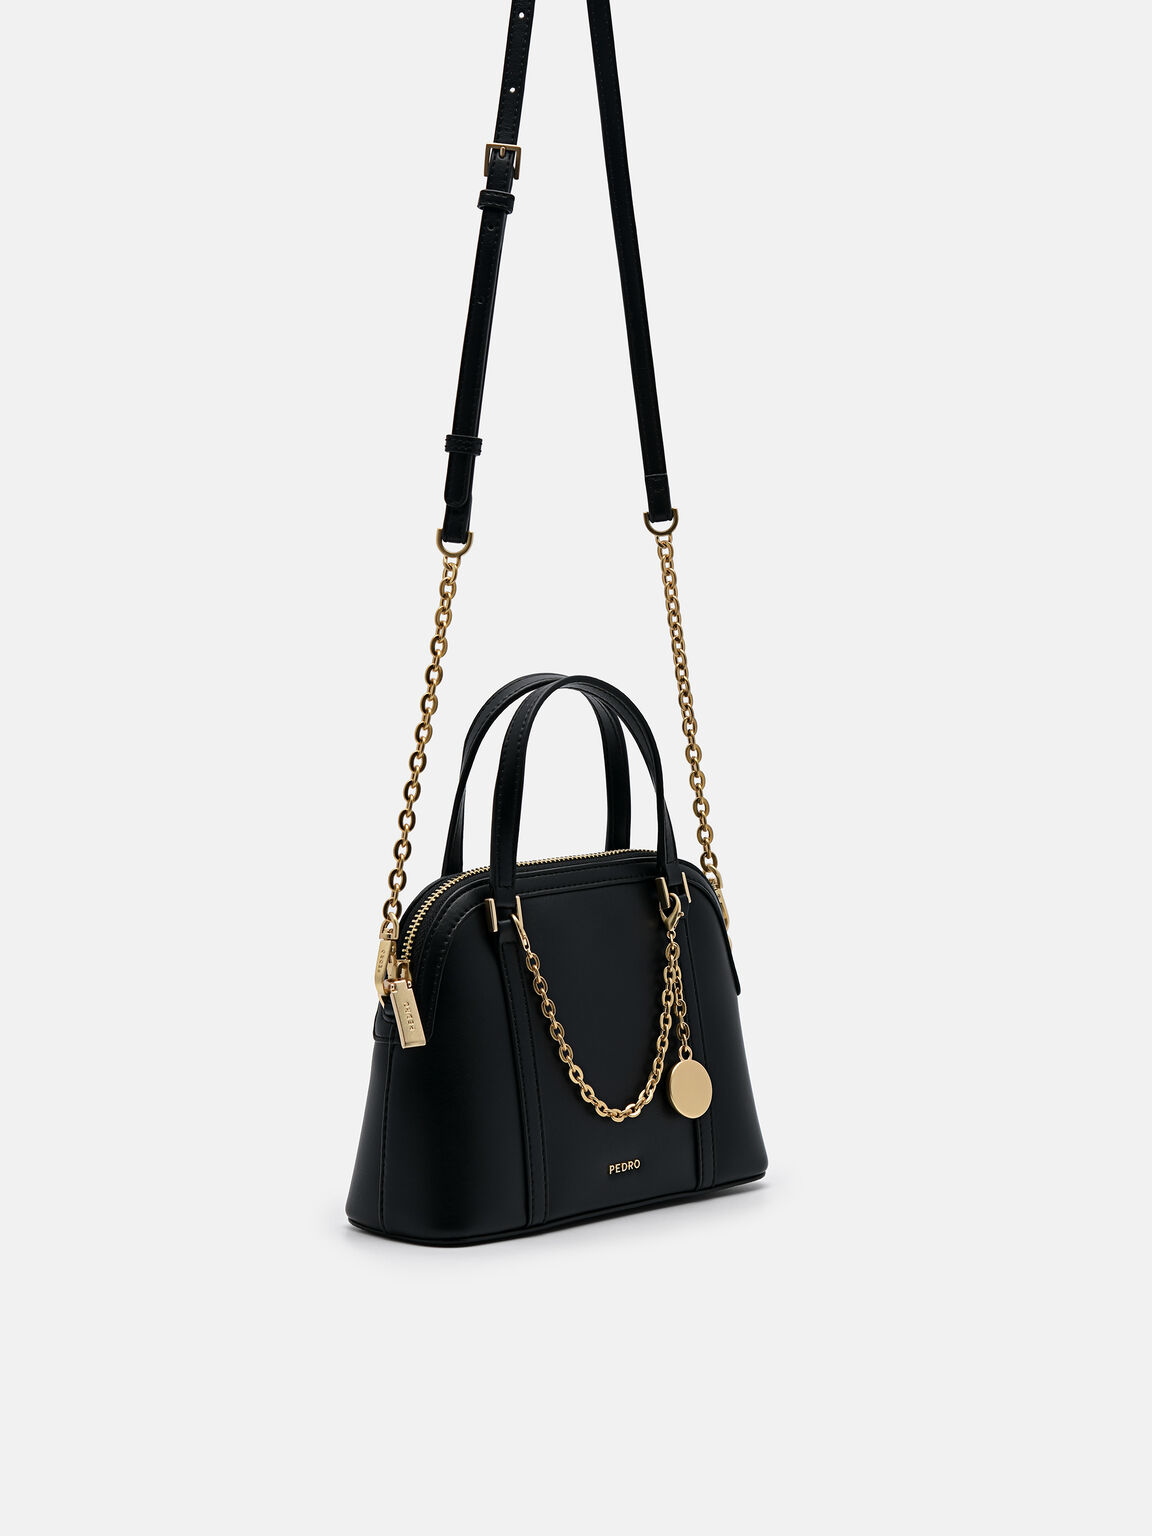 Lucia Mini Handbag, Black